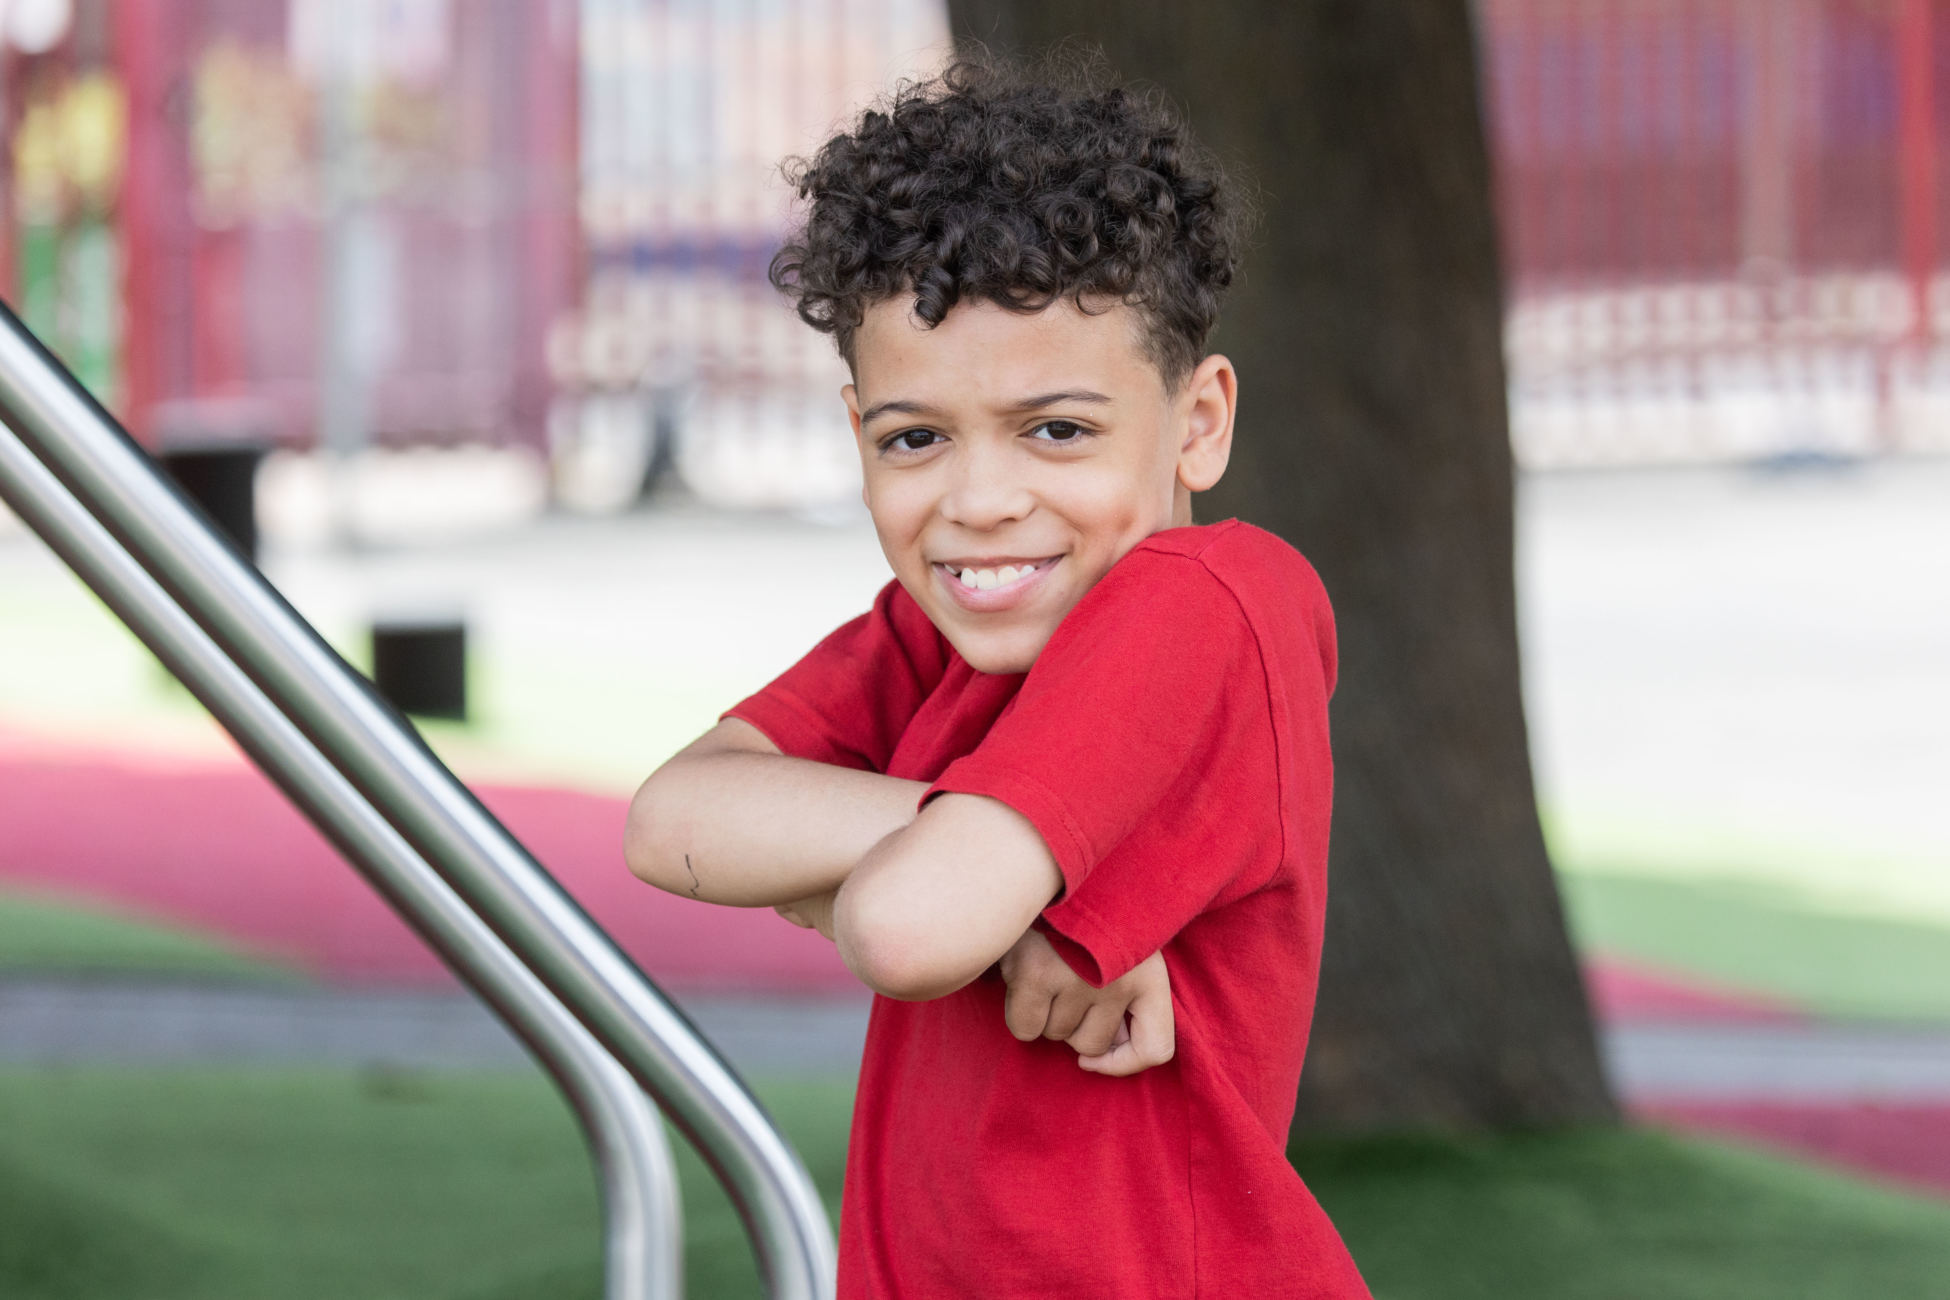 A boy posing in a school playground